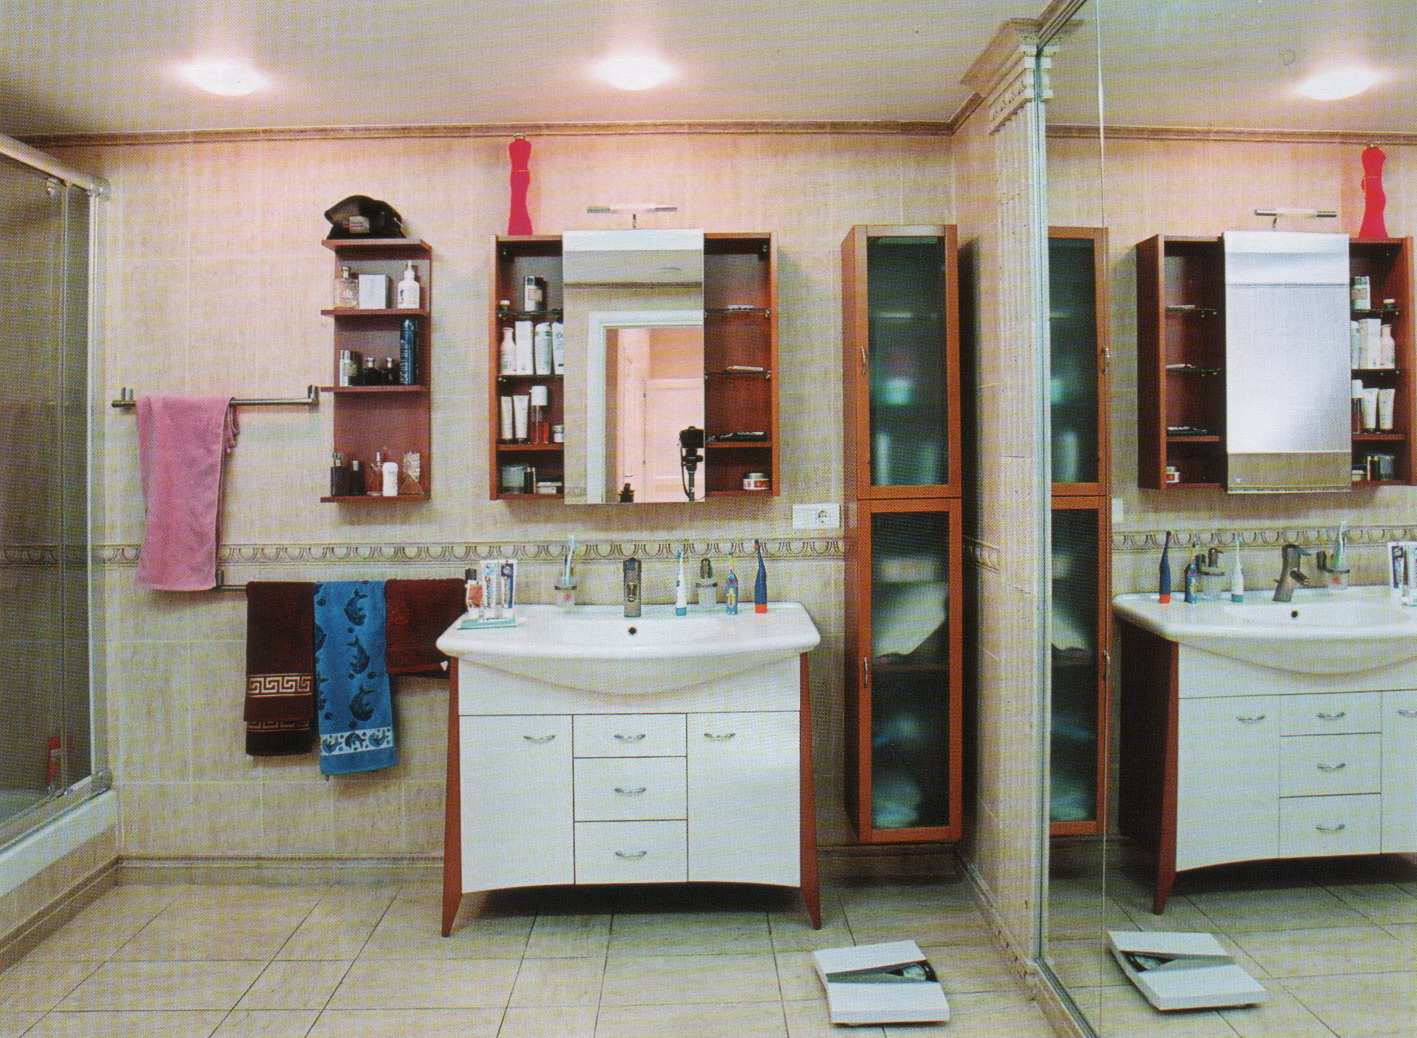 تزیین حمام - حمام زیبا - حمام عروس - دکوراسیون حمام - بازسازی حمام